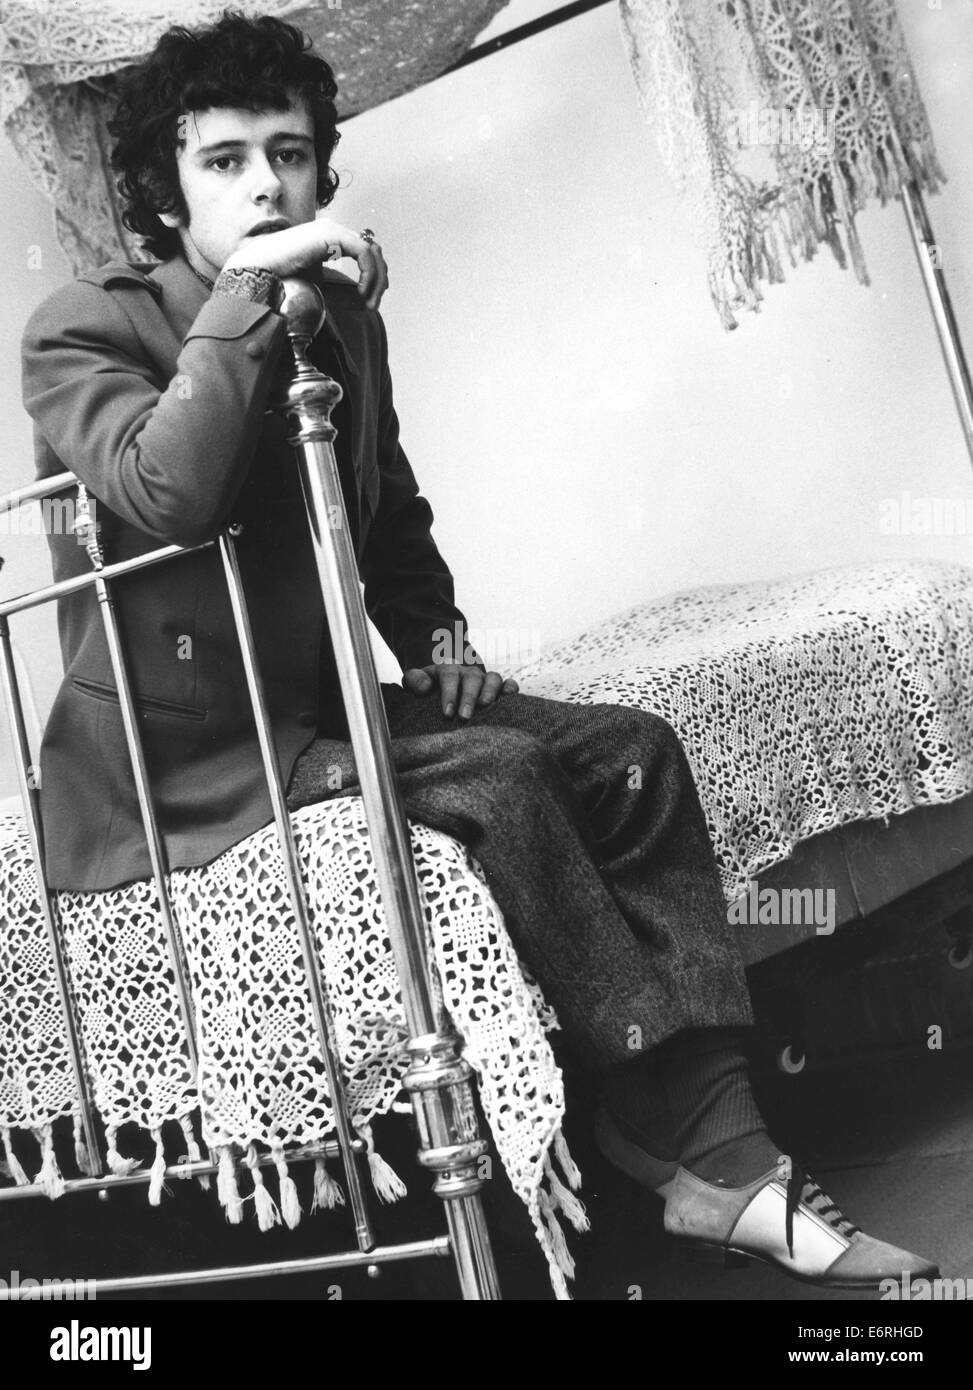 London, UK, UK. 2. Oktober 1970. DONOVAN (geb. DONOVAN PHILIPS LEITCH, 10. Mai 1946) ist eine schottische Sängerin, Songwriter und Gitarrist. Er entwickelte einen eklektischen und unverwechselbaren Stil, das Folk, Jazz, Pop, Psychedelia und Weltmusik (insbesondere Calypso) gemischt. Bild - Maida Vale, Paddington, London, England - Sänger Musiker DONOVAN, 19, entspannen am Maida Vale nach Hause sitzen auf seinem viktorianischen Messingbett mit gehäkelter Spitze Baldachin, schöne Gedanken. © KEYSTONE Pictures/ZUMAPRESS.com/Alamy Live-Nachrichten Stockfoto